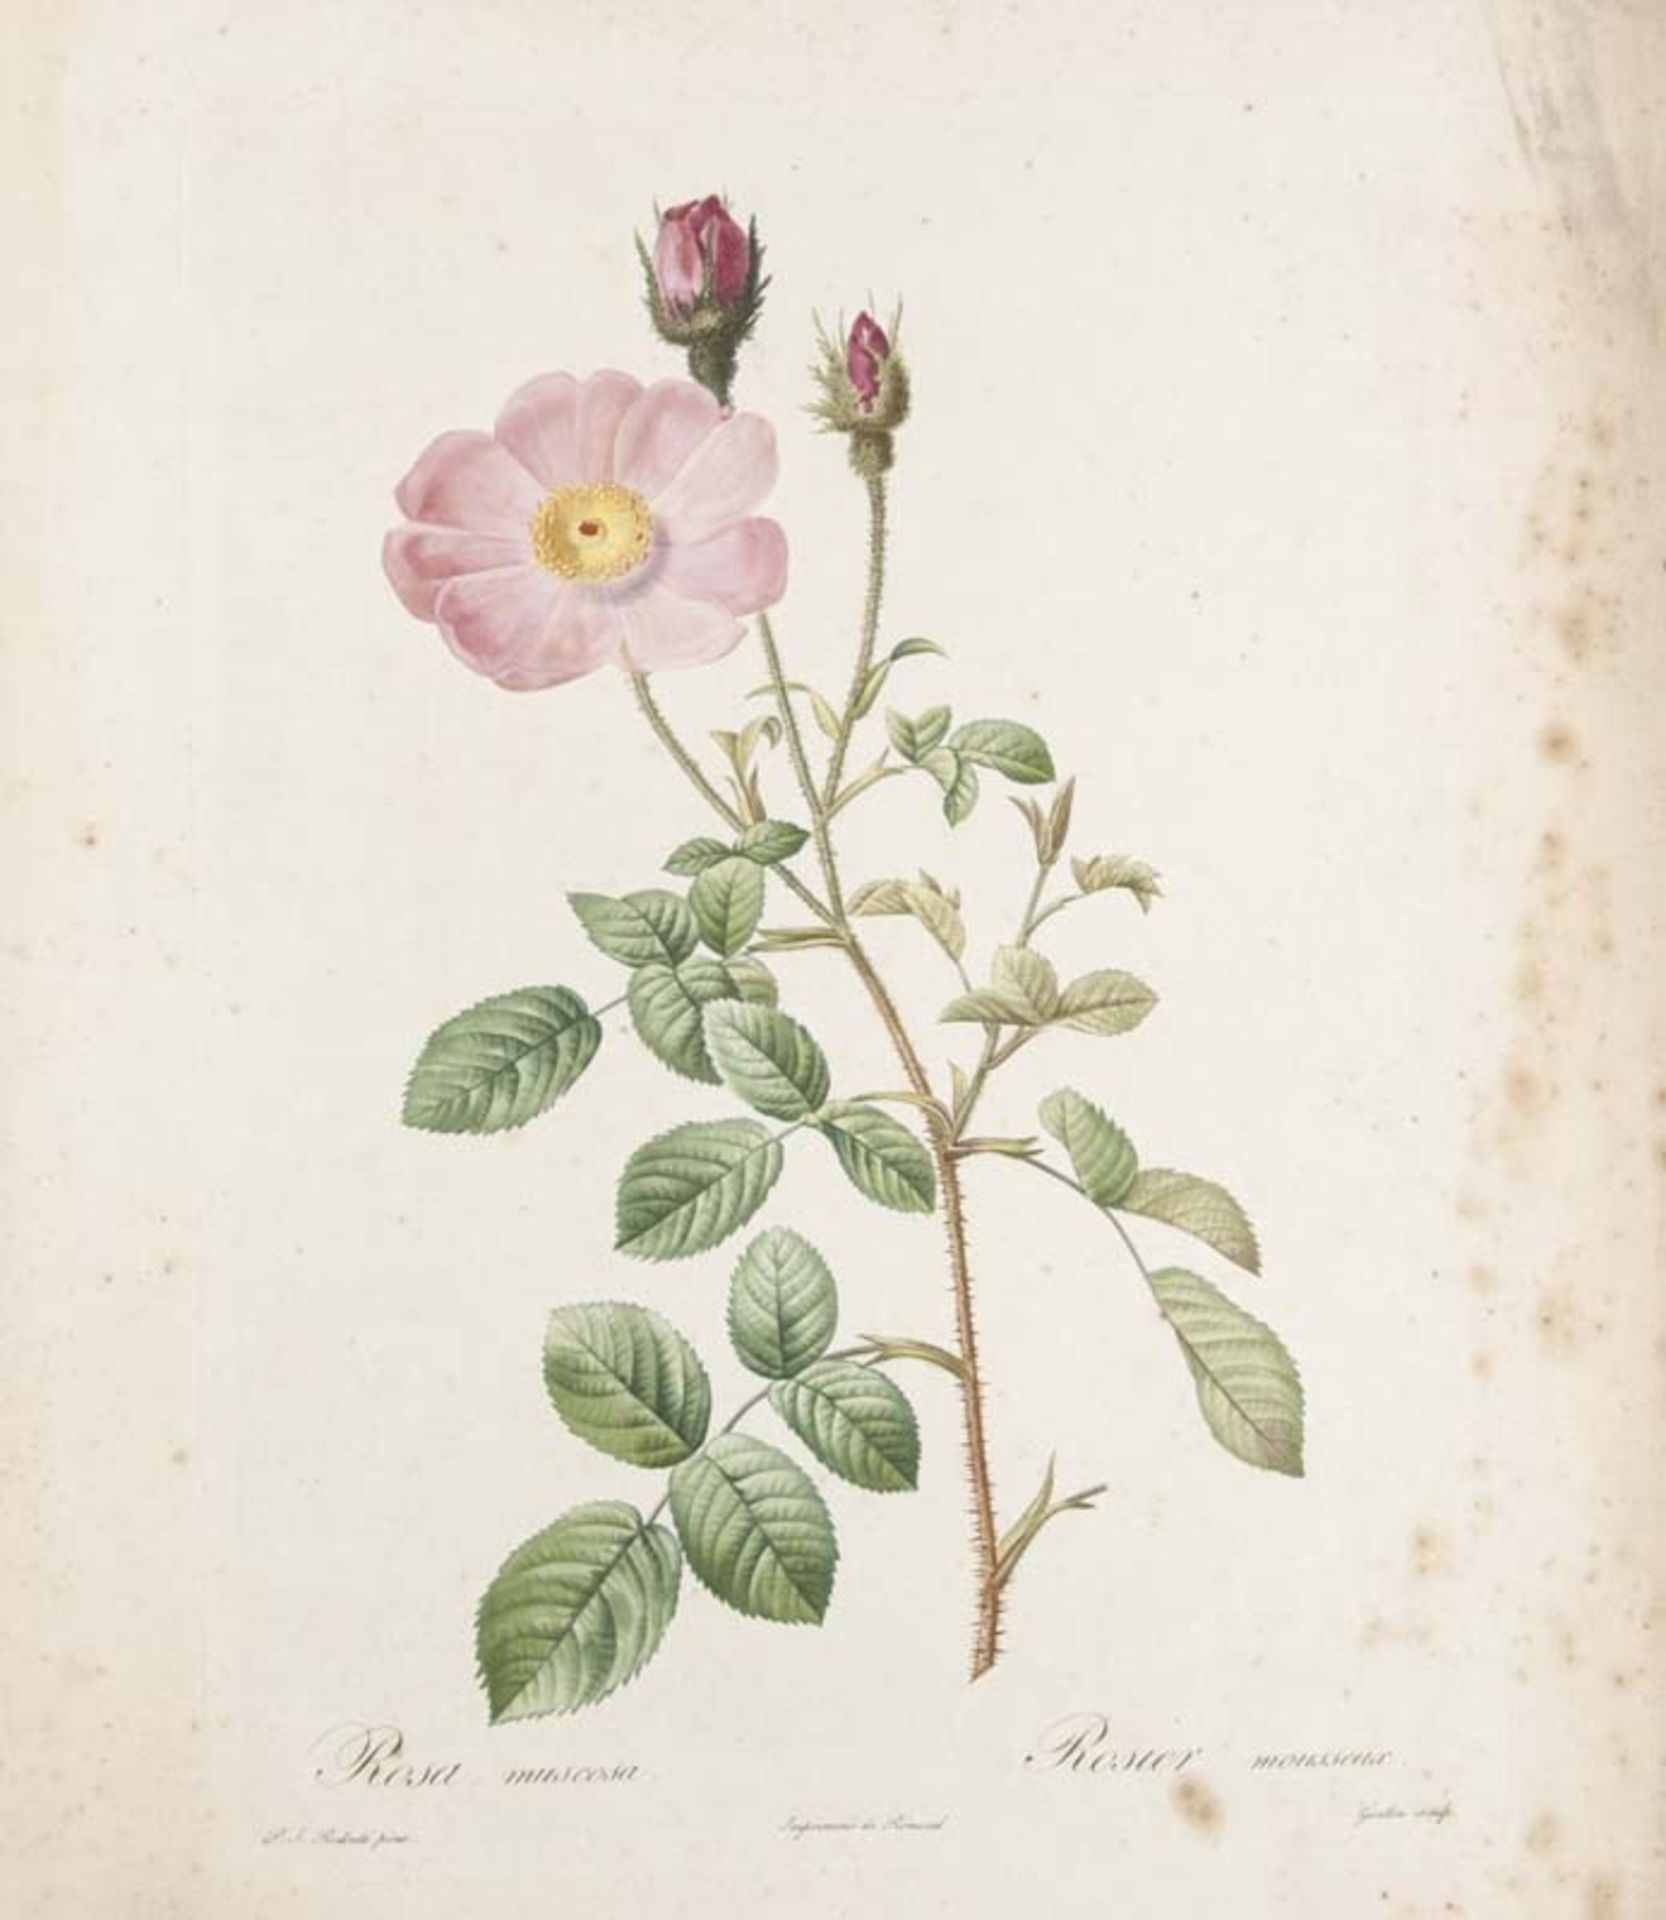 Redouté, Pierre-Joseph. Sammlung von 22 farbigen Pflanzenkupfern nach Redouté, ca. 1802 bis 1843. 4°